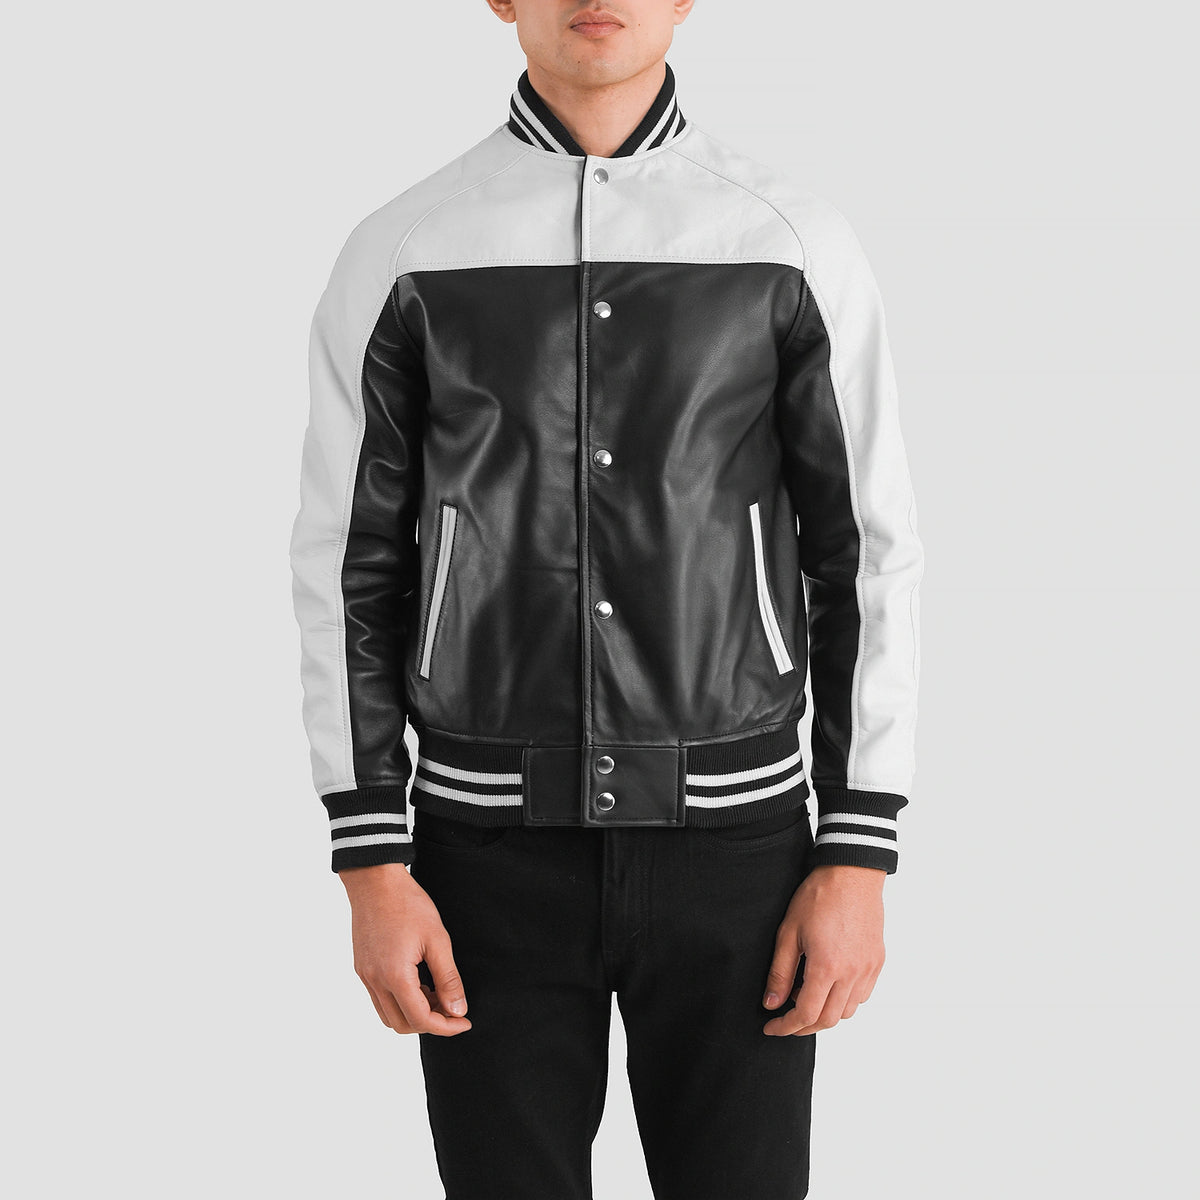 Terrance Black & White Leather Varsity Jacket